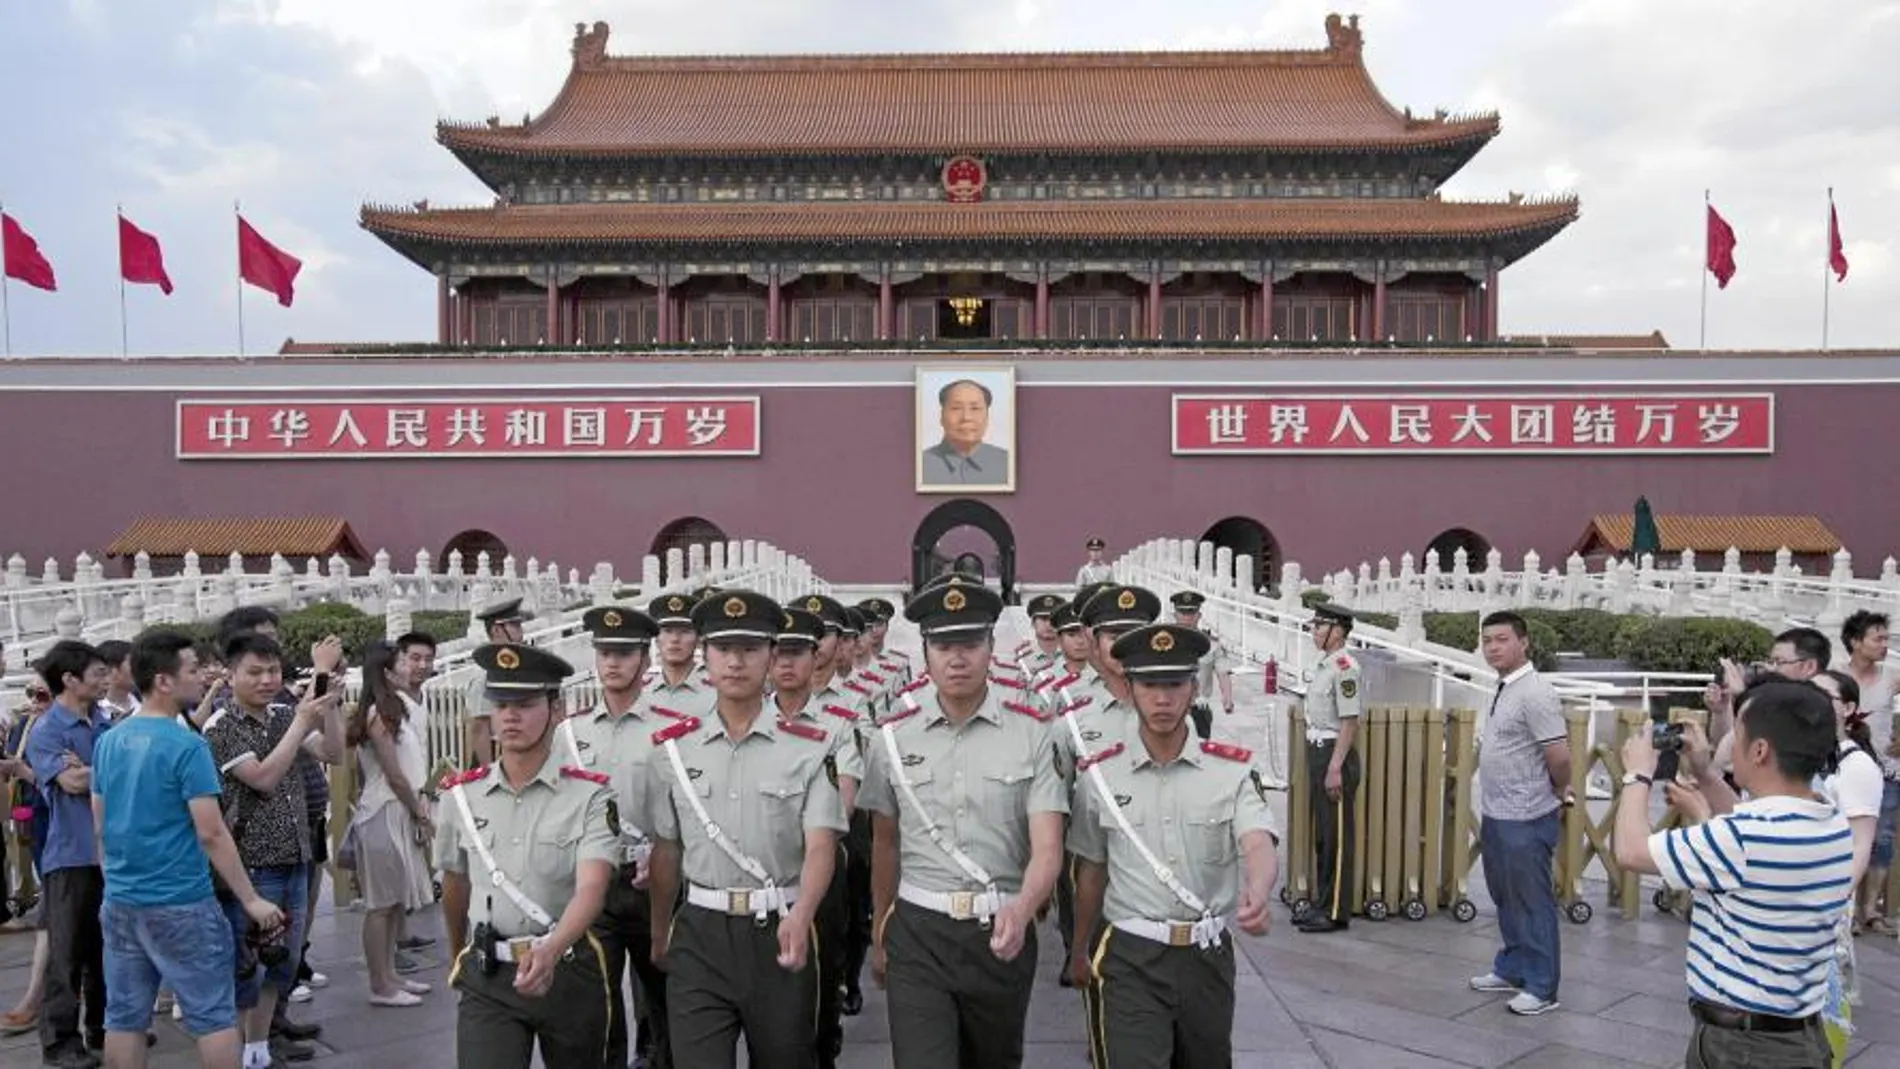 El régimen chino ha reforzado la vigilancia policial en las calles y ha detenido a opositores como parte de una operación de seguridad en la víspera del 25º aniversario de Tiananmen.